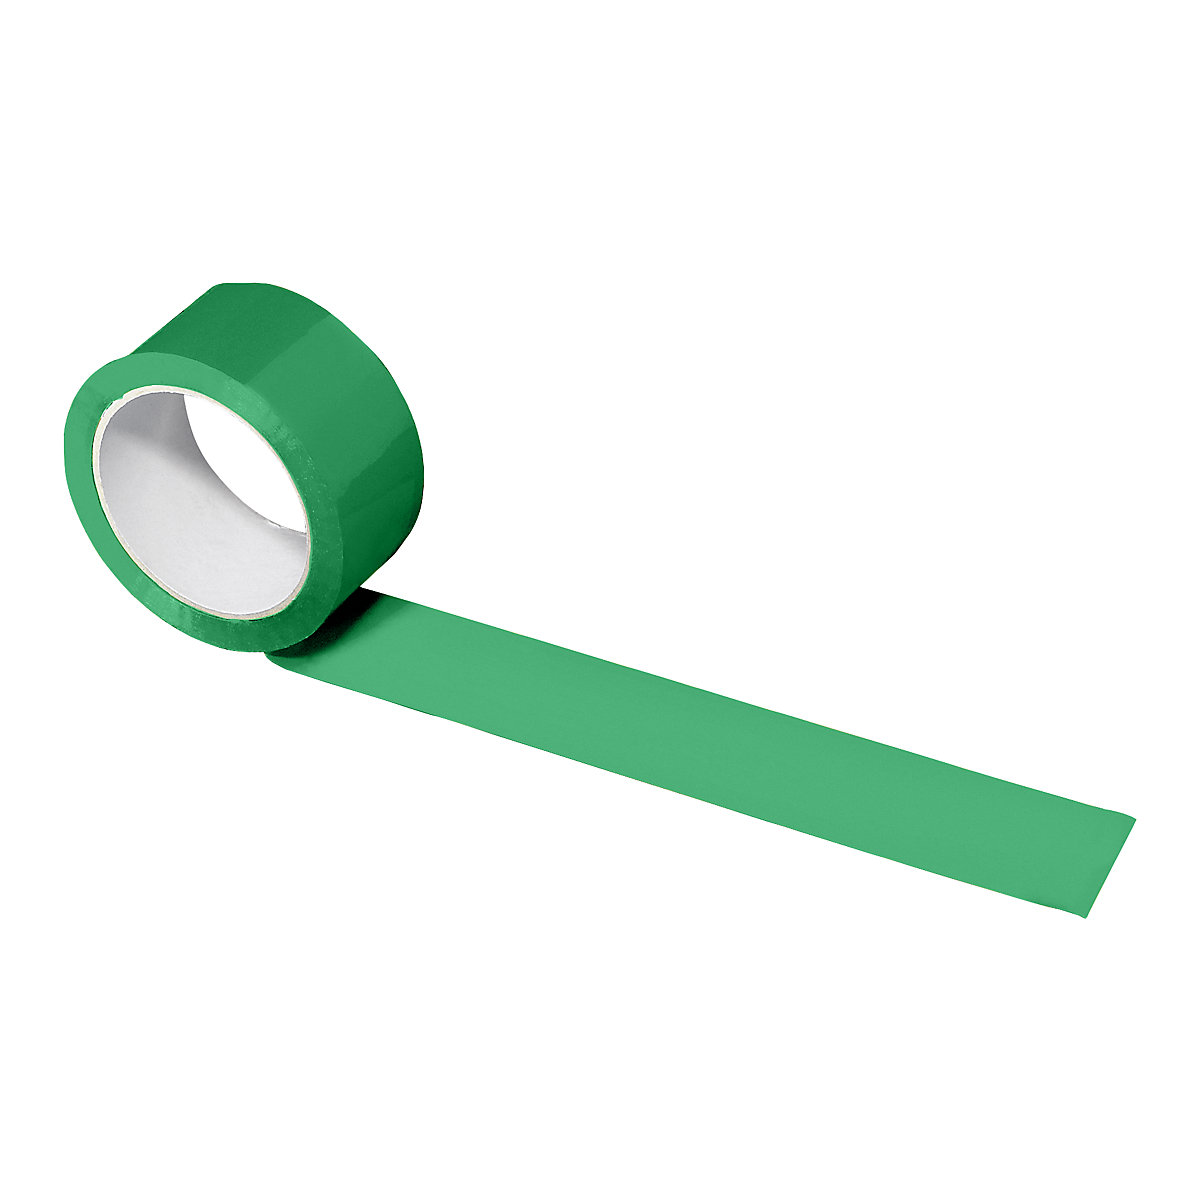 PP traka za pakiranje, u različitim bojama, pak. 108 rola, u zelenoj boji, širina trake 50 mm